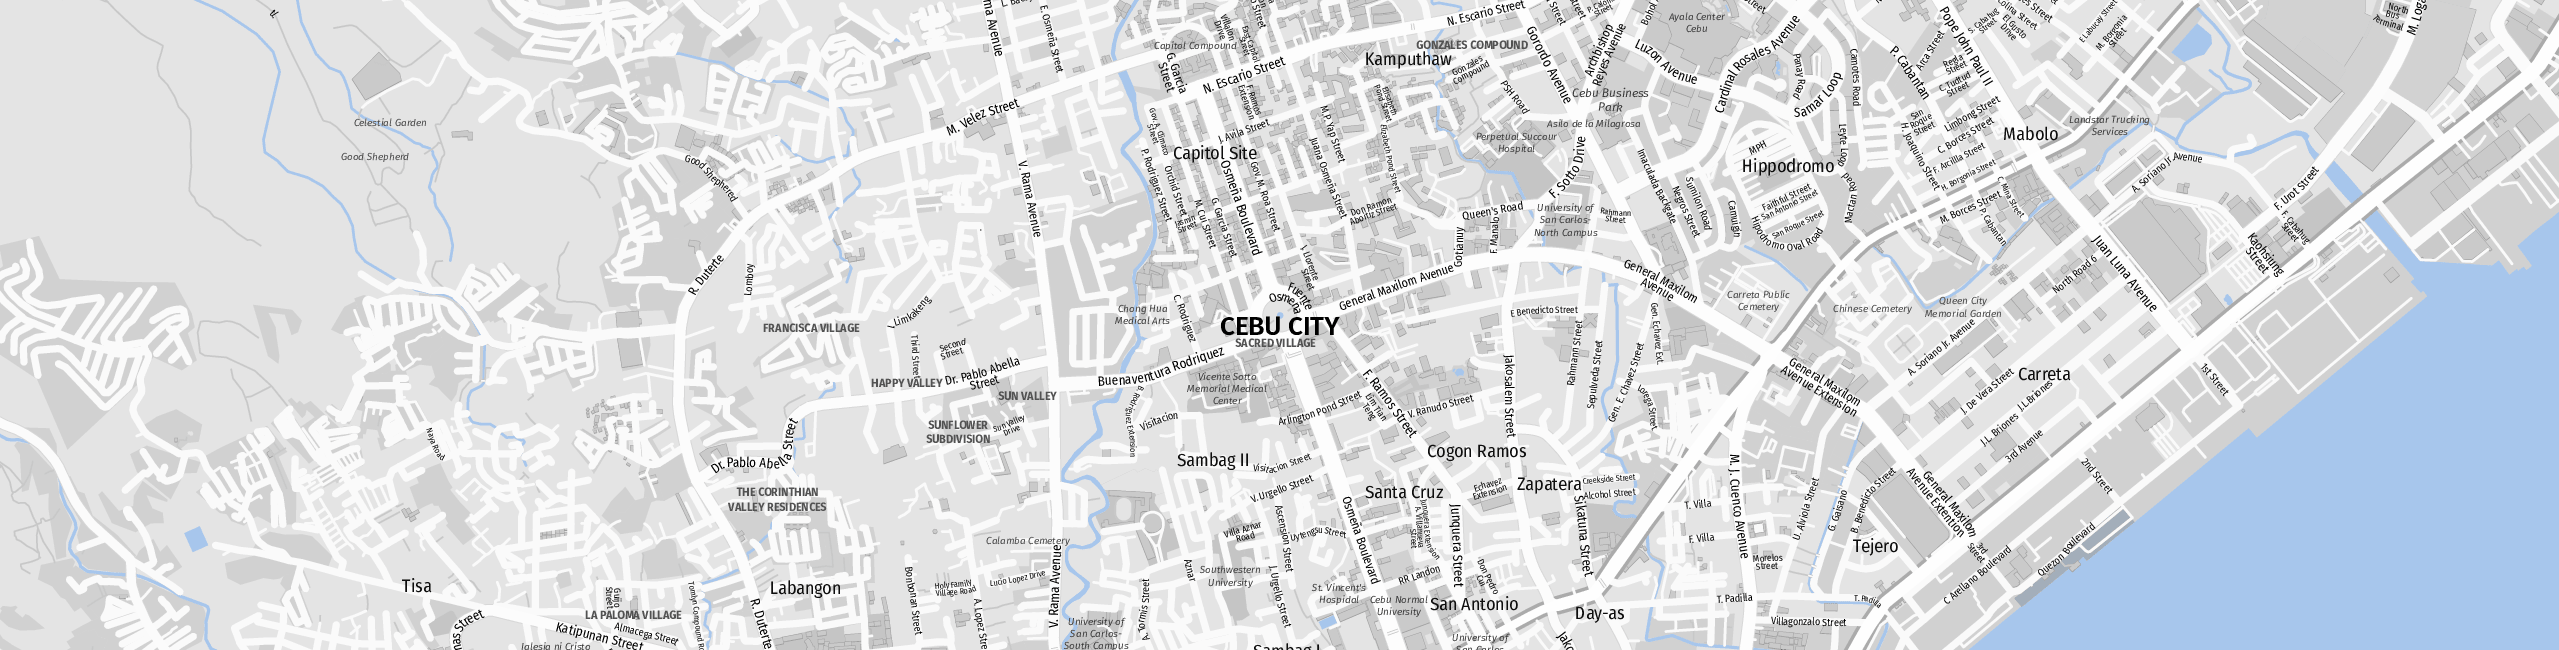 Stadtplan Cebu-Stadt zum Downloaden.